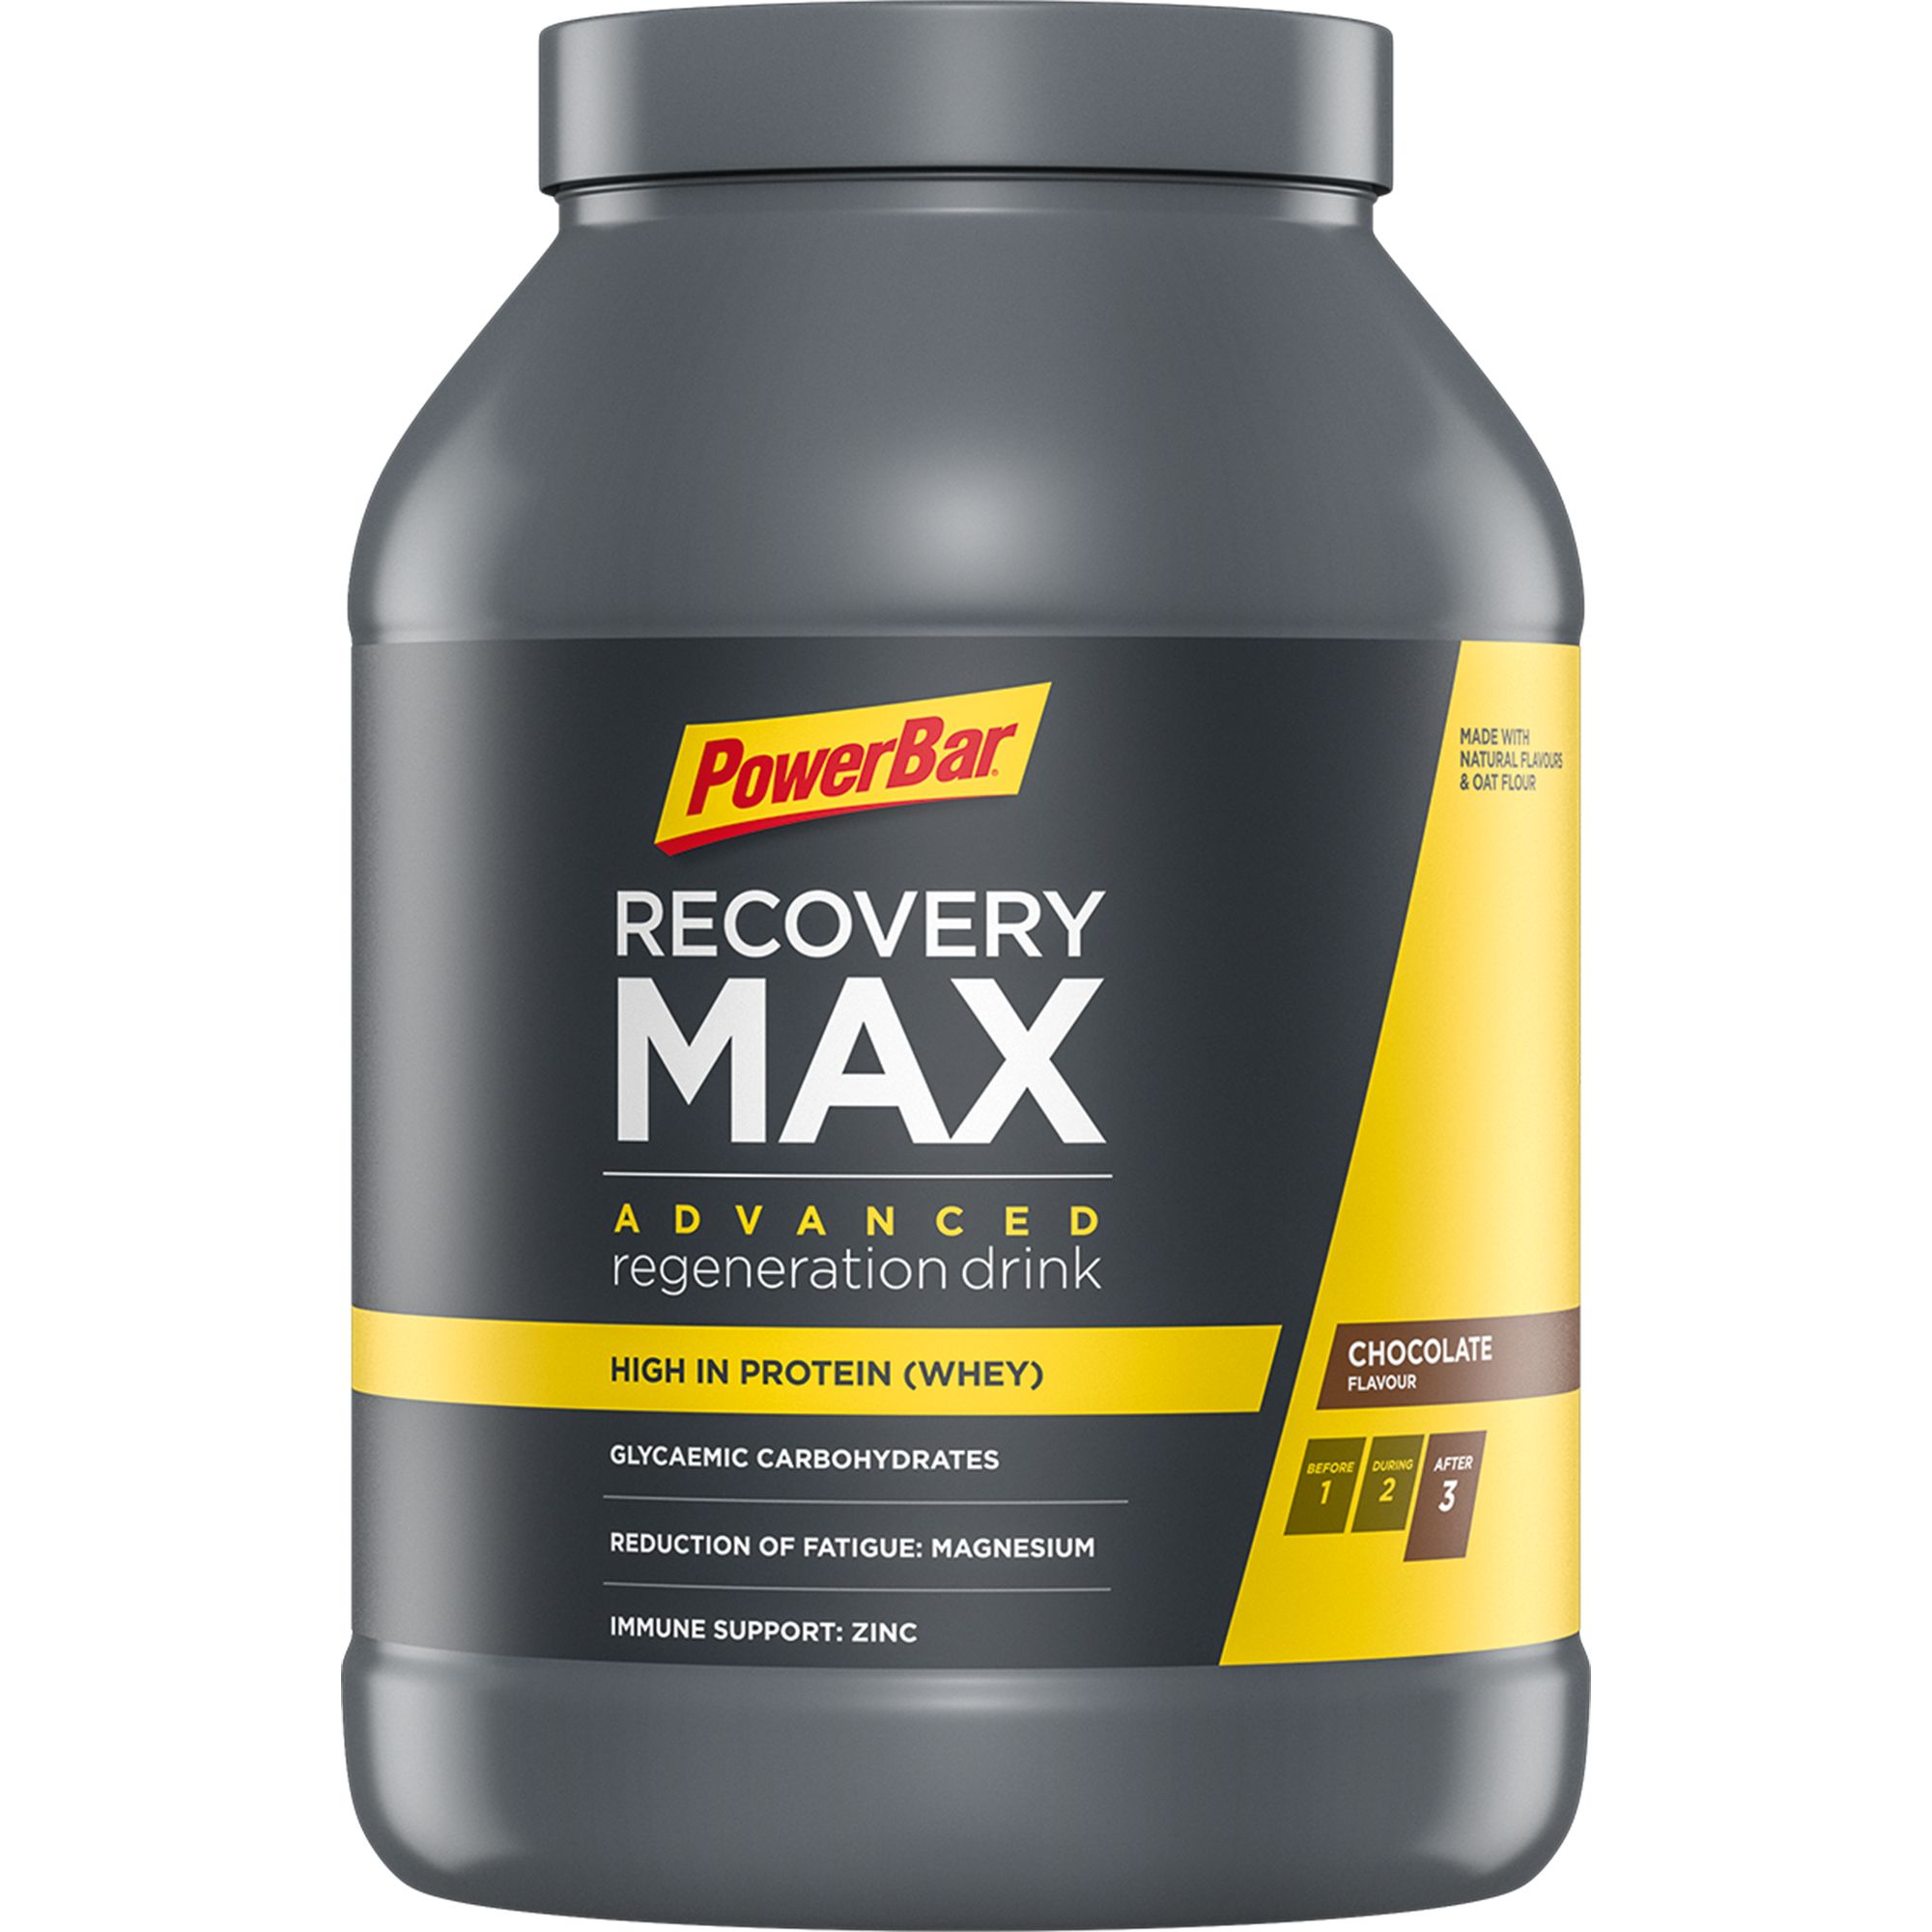 Recovery Max - um das Maximum aus deinem Training oder den Wettkämpfen herauszuholen